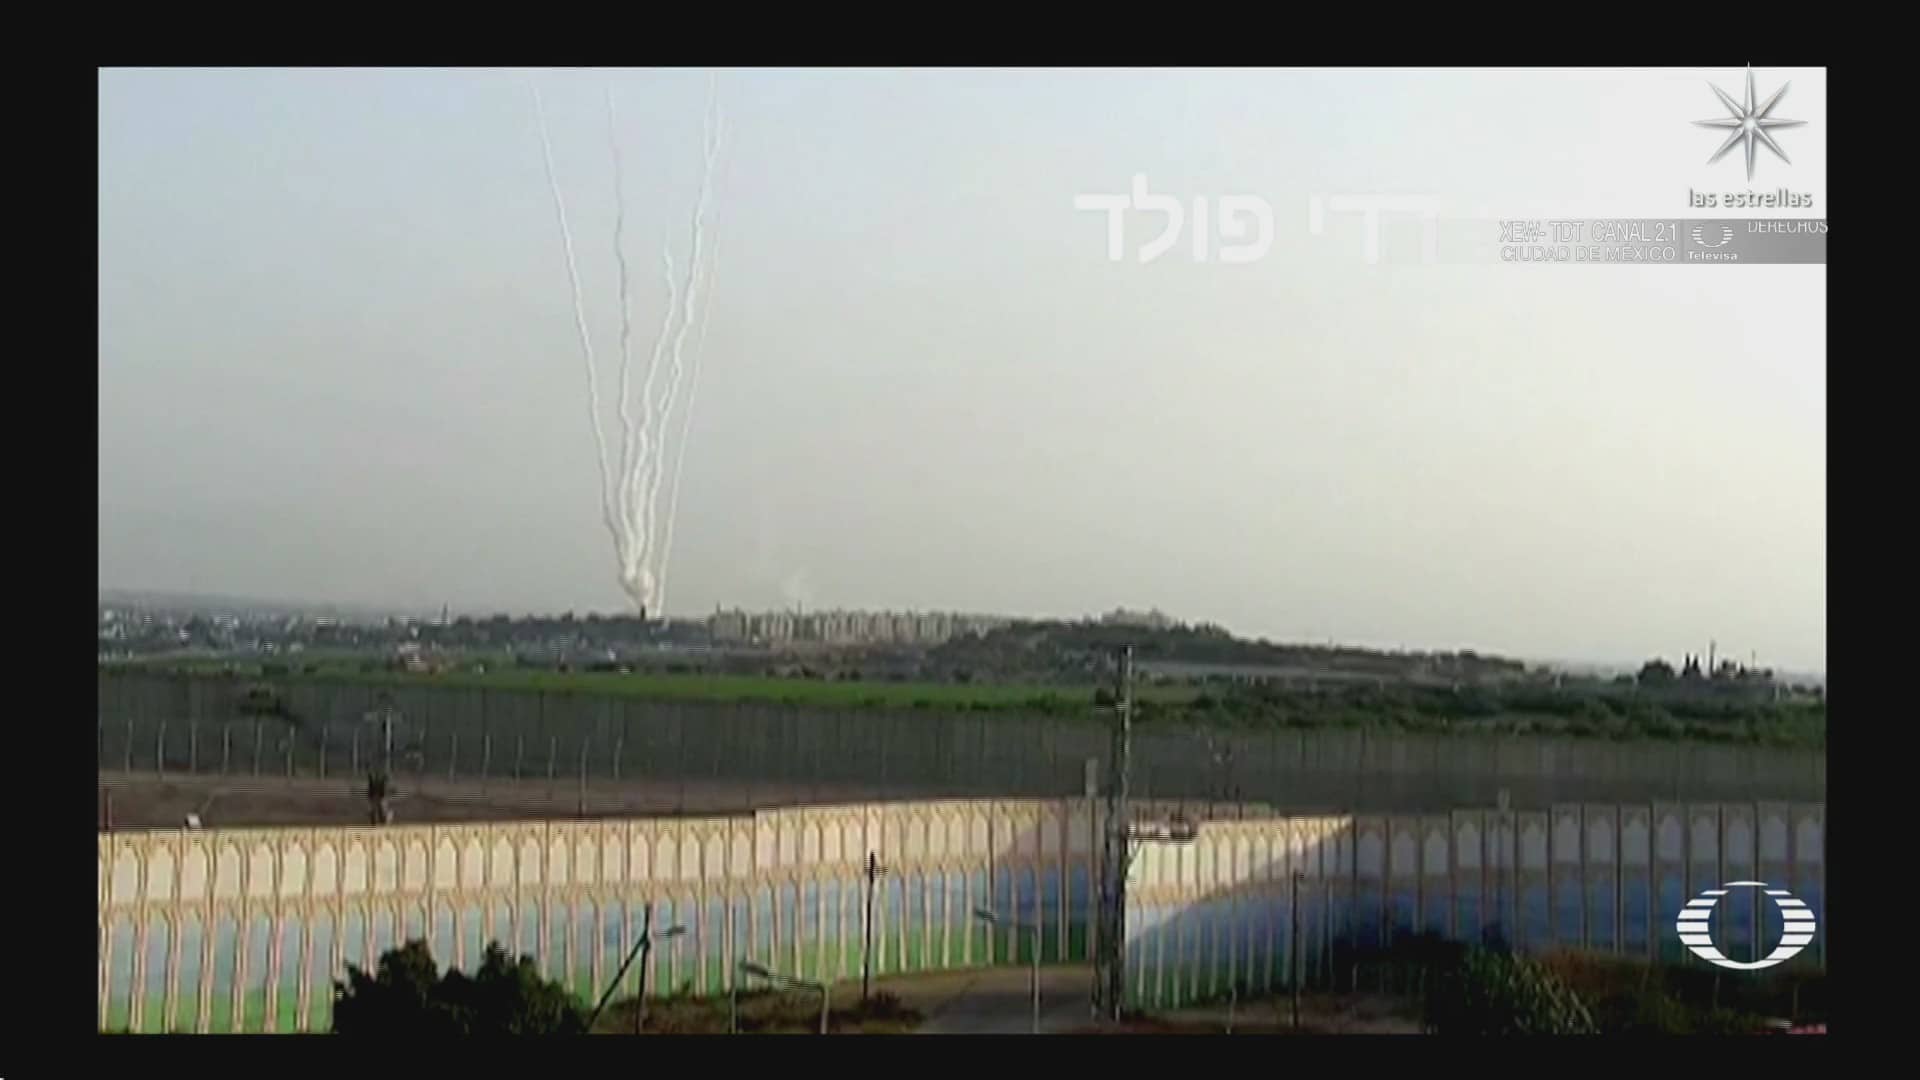 activan sirenas por alerta de misiles en israel